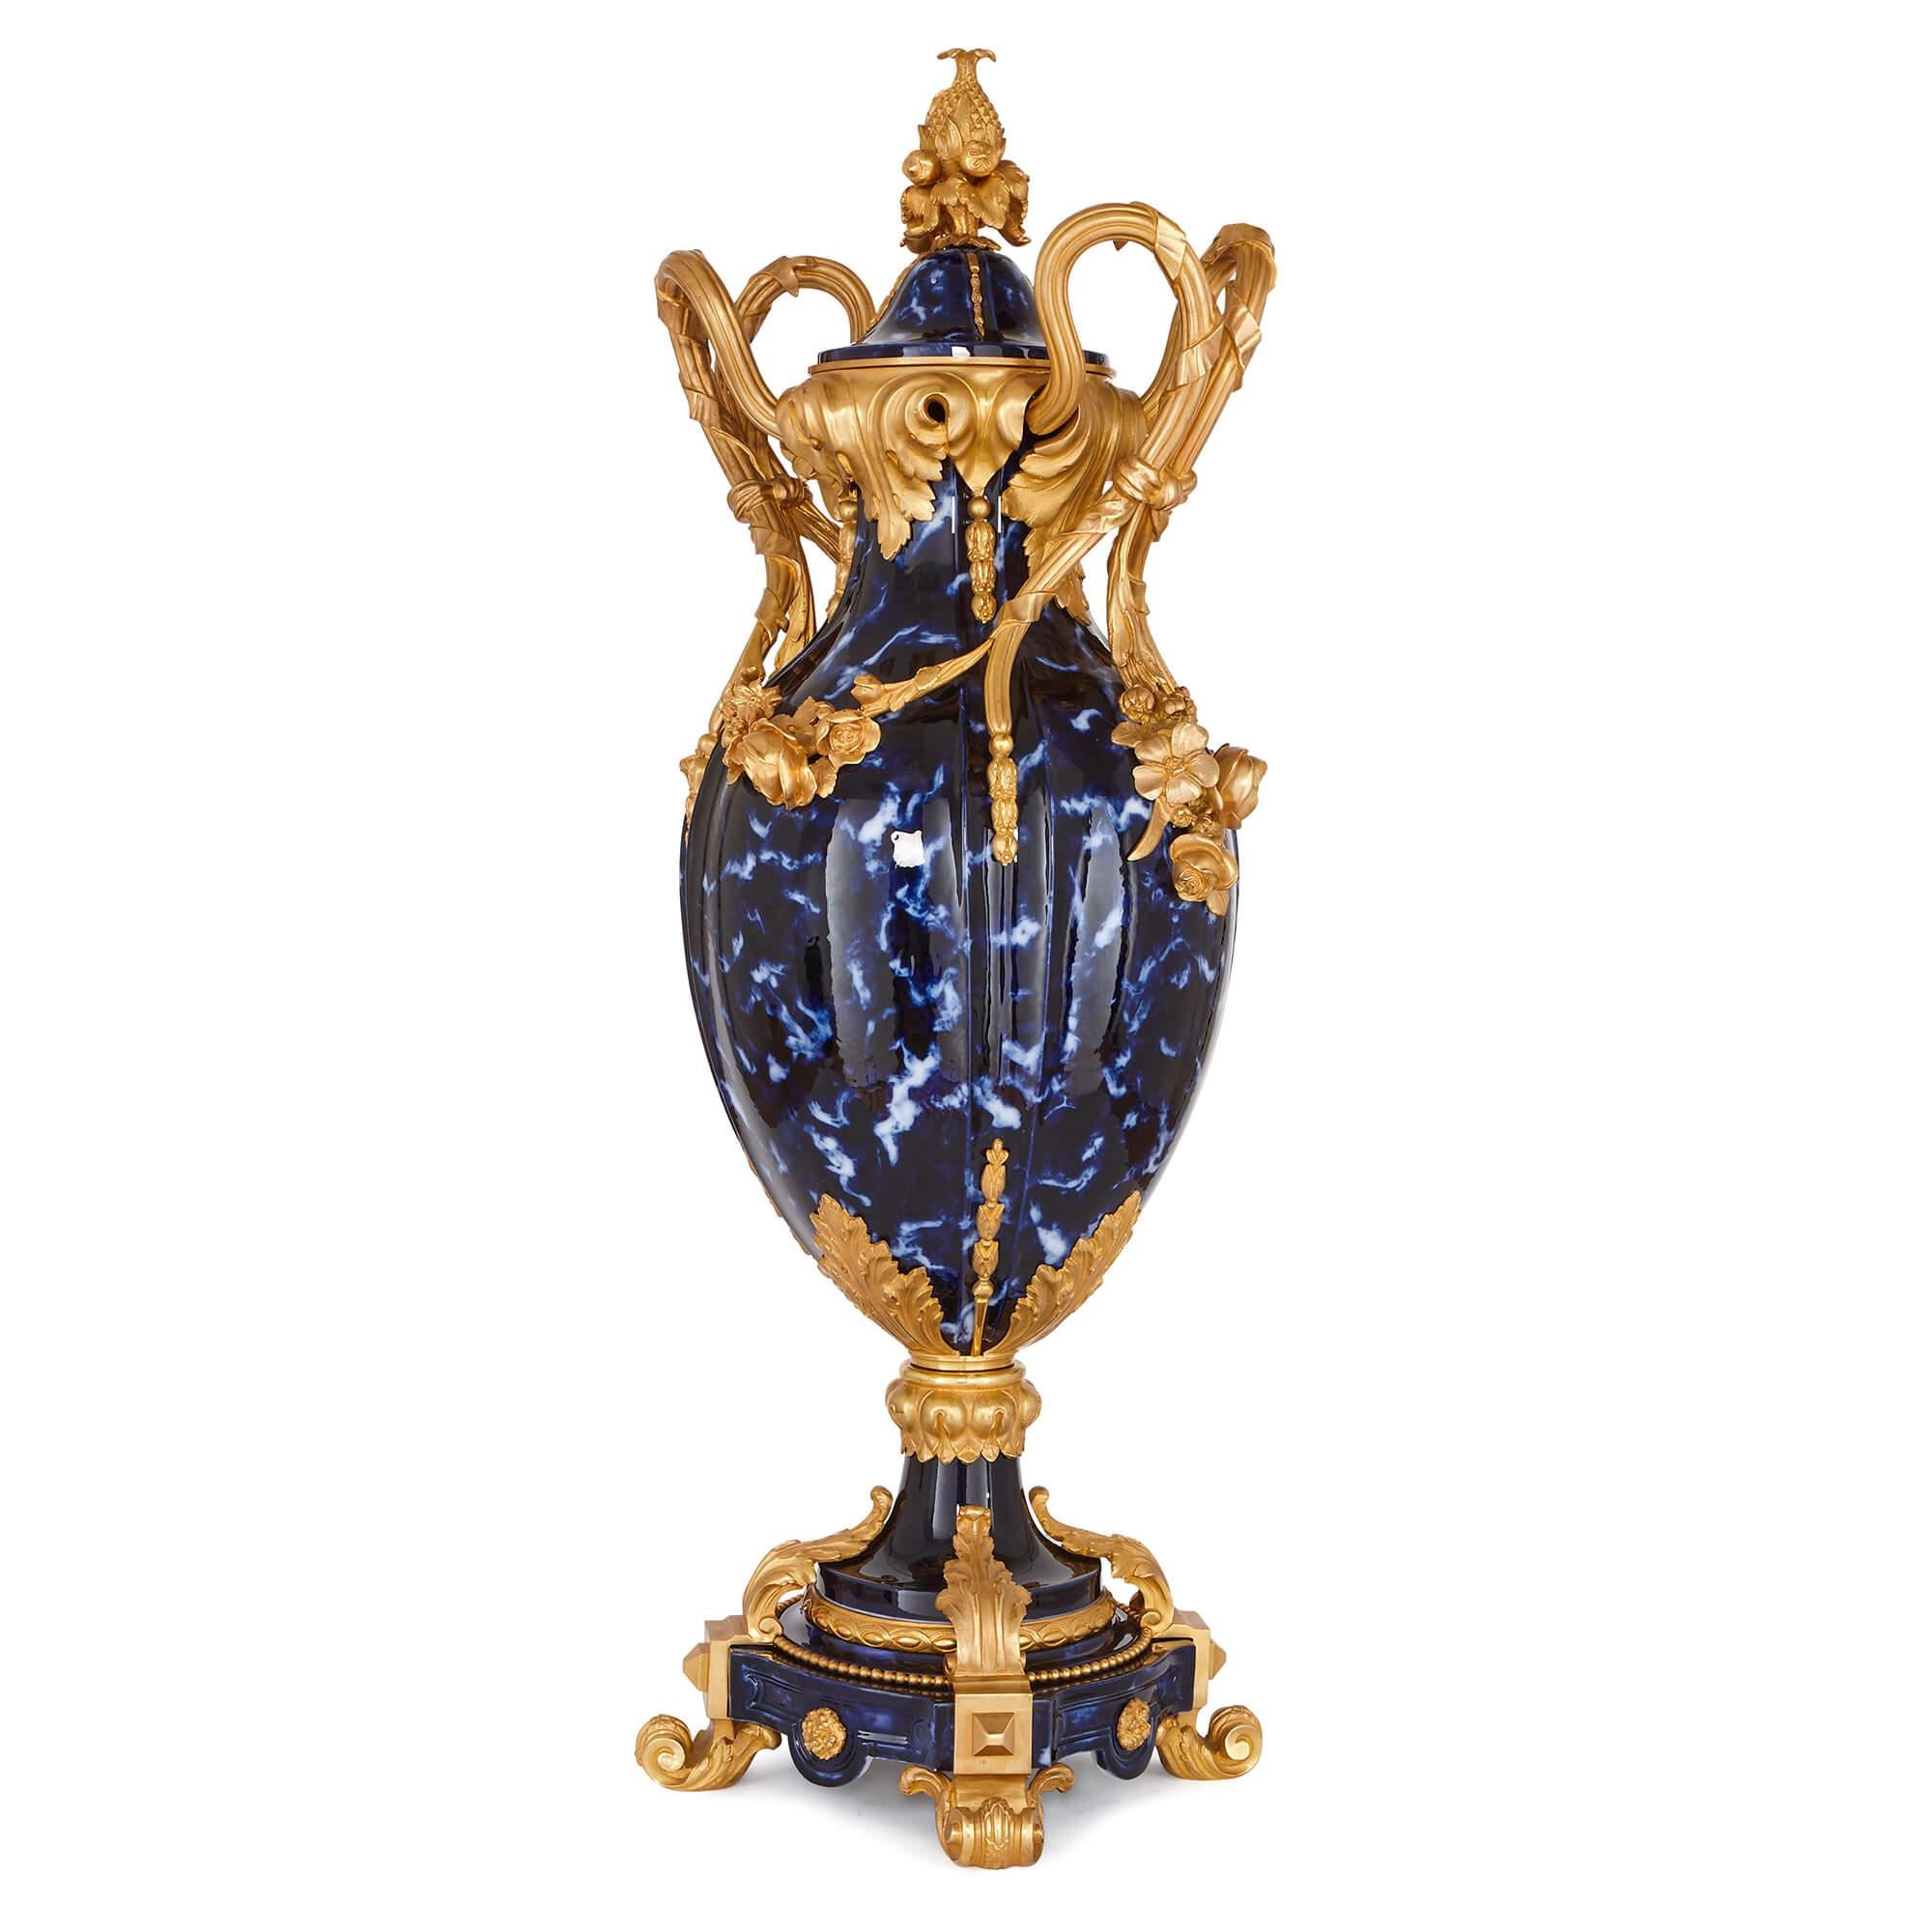 Die beiden Vasen haben eine große, eiförmige Form mit geriffelten Körpern, die aus blau gefärbter Keramik gefertigt sind. Die Vasen sind mit zwei vergoldeten Bronzegriffen versehen, die mit Blumenranken und Girlanden verbunden sind, und ihre Deckel